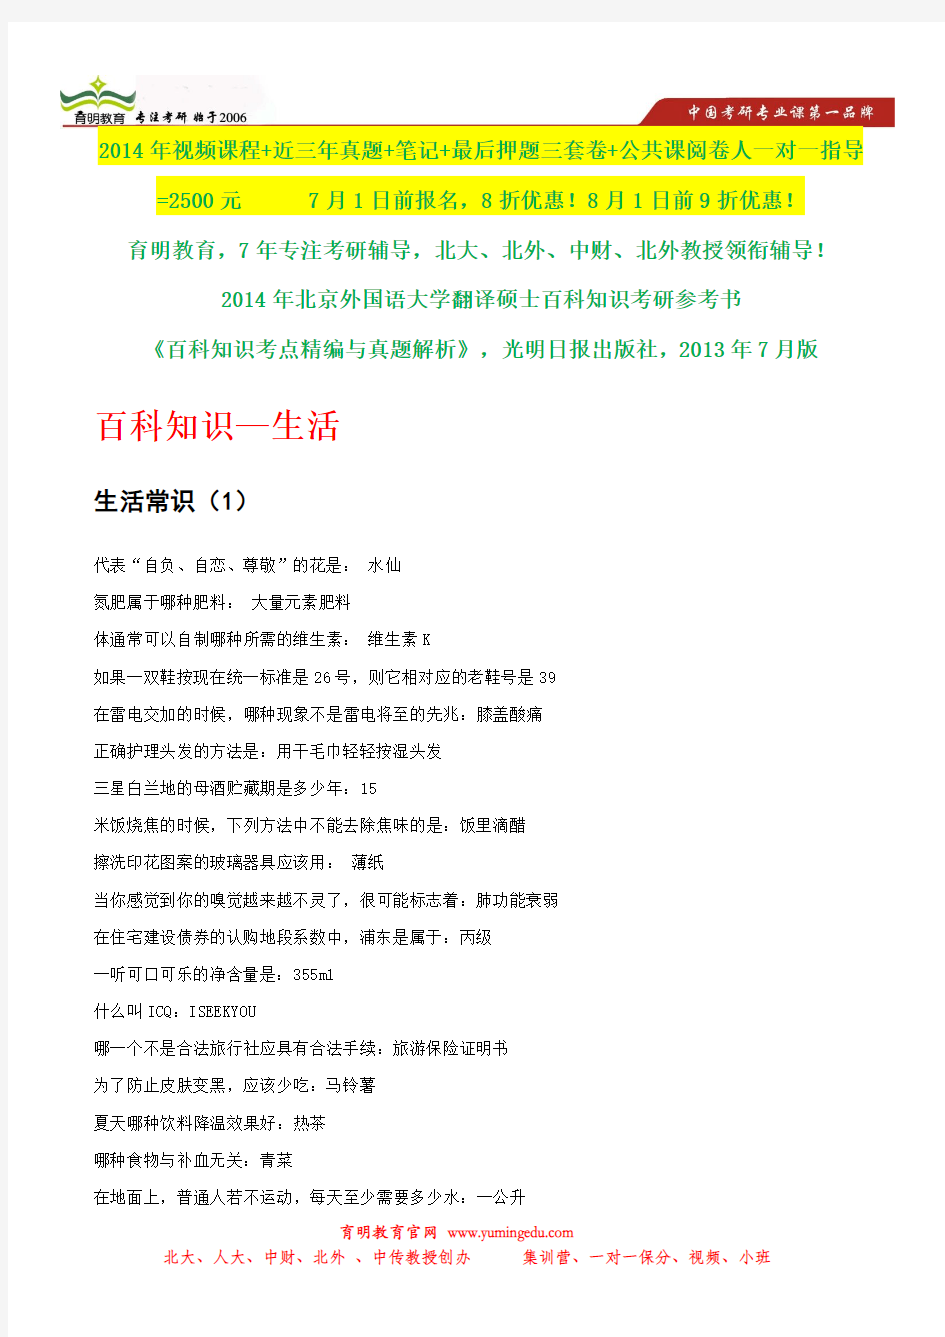 2014年北京外国语大学英语翻译硕士考研状元笔记,考研参考书笔记